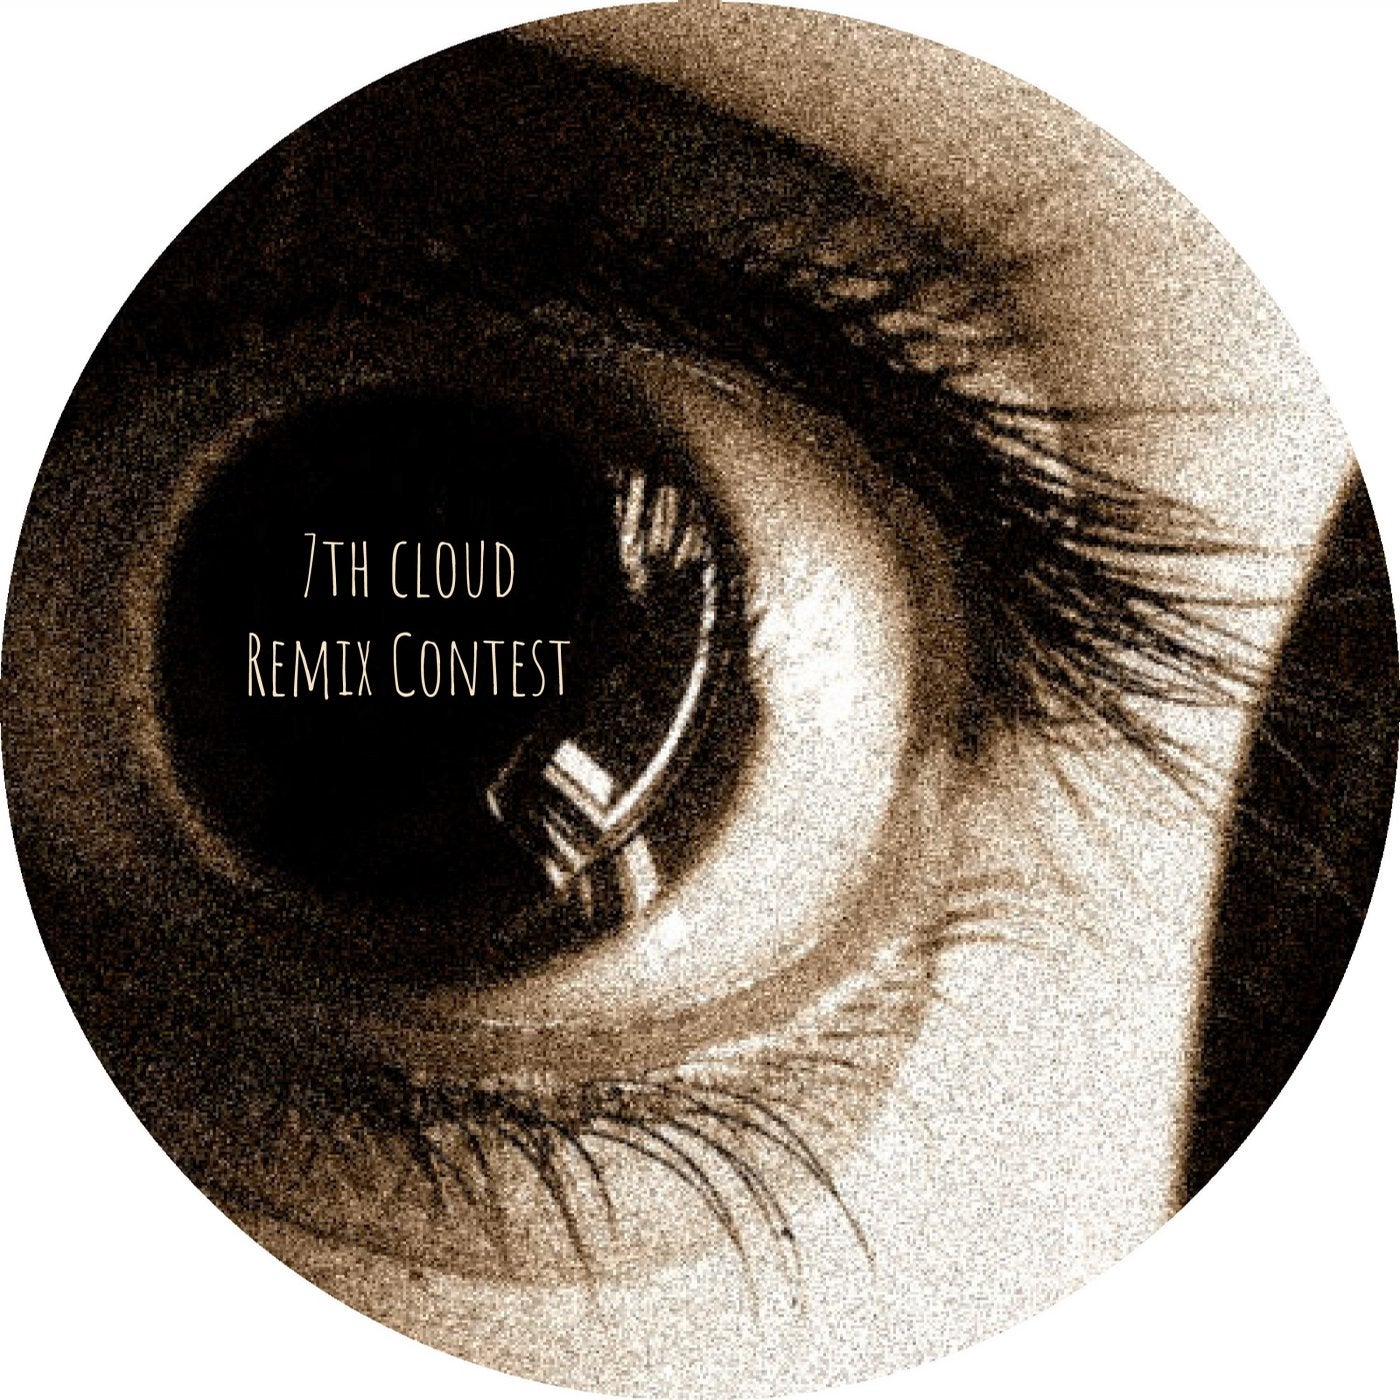 7th Cloud Remix Contest